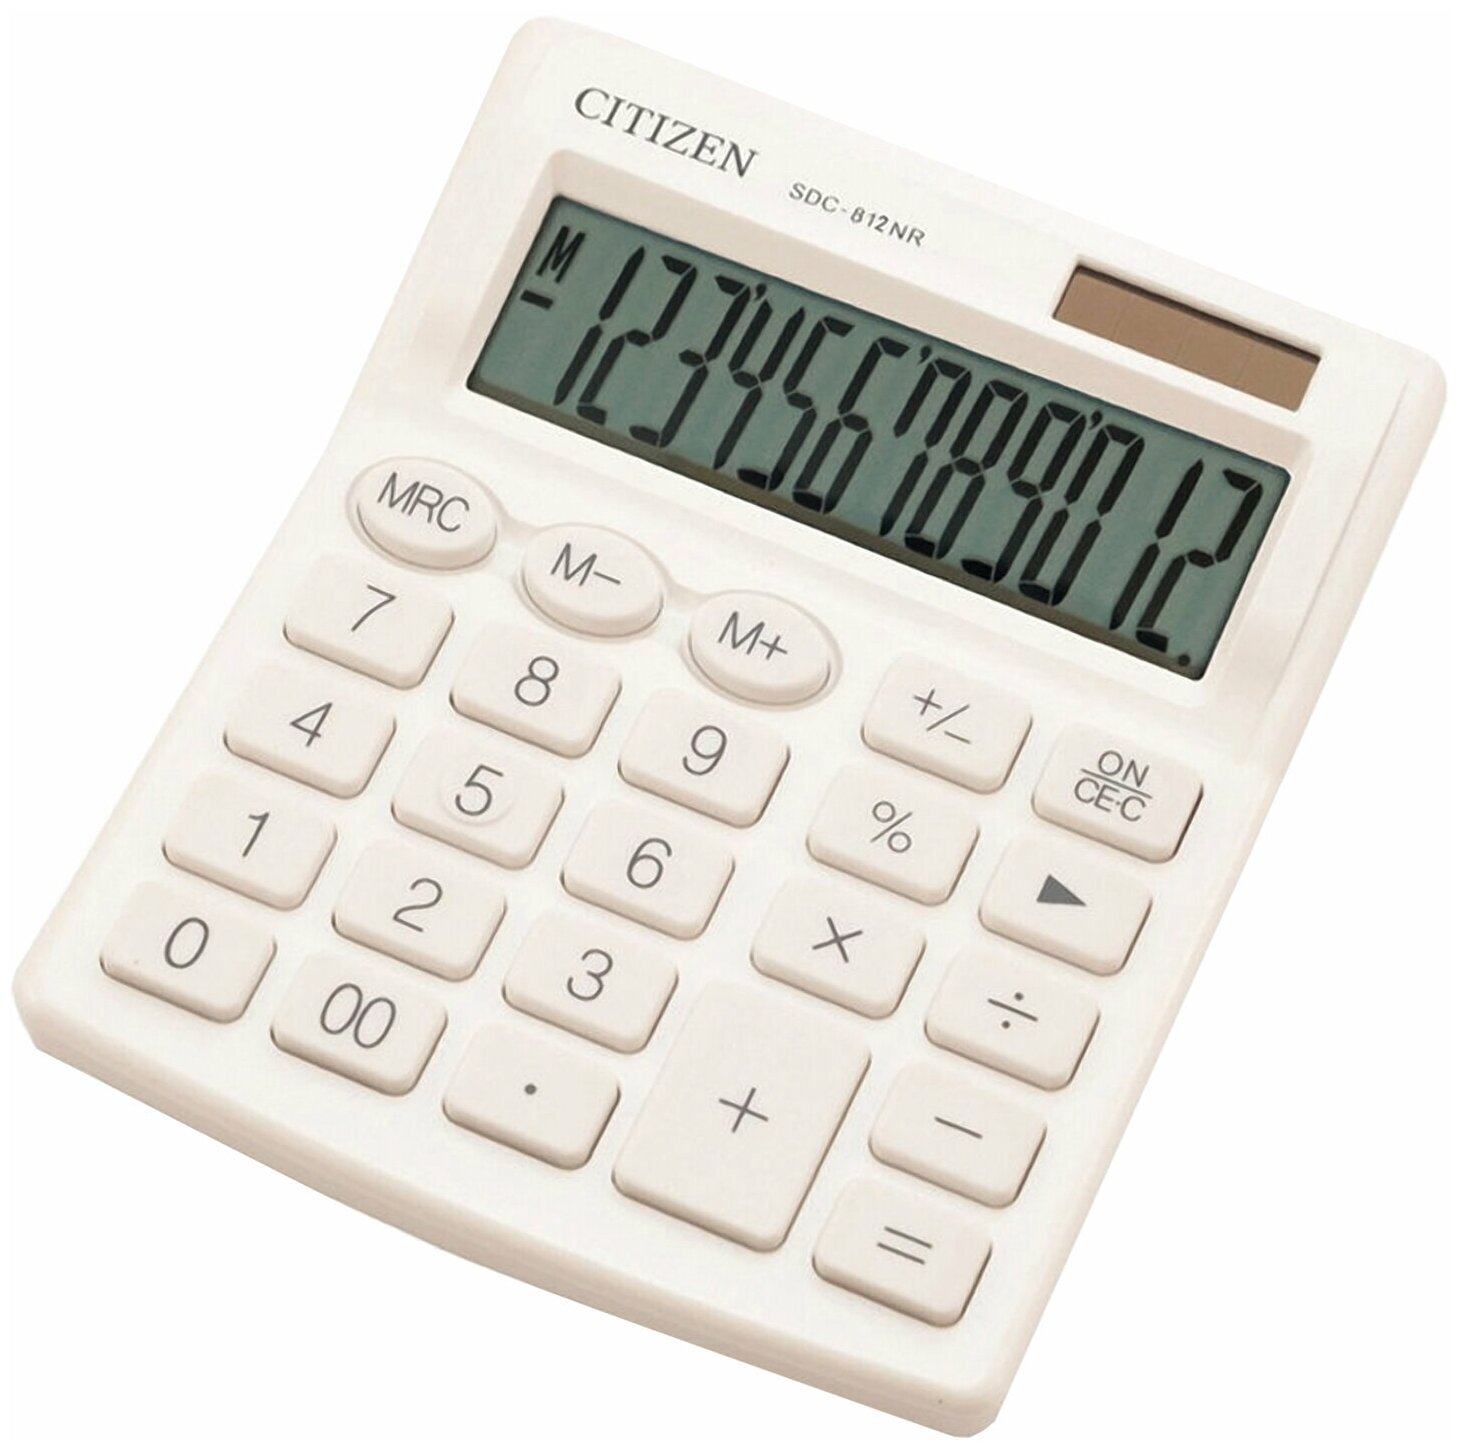 Калькулятор настольный CITIZEN SDC-812NRWHE компактный (124×102) 12 разрядов двойное питание белый